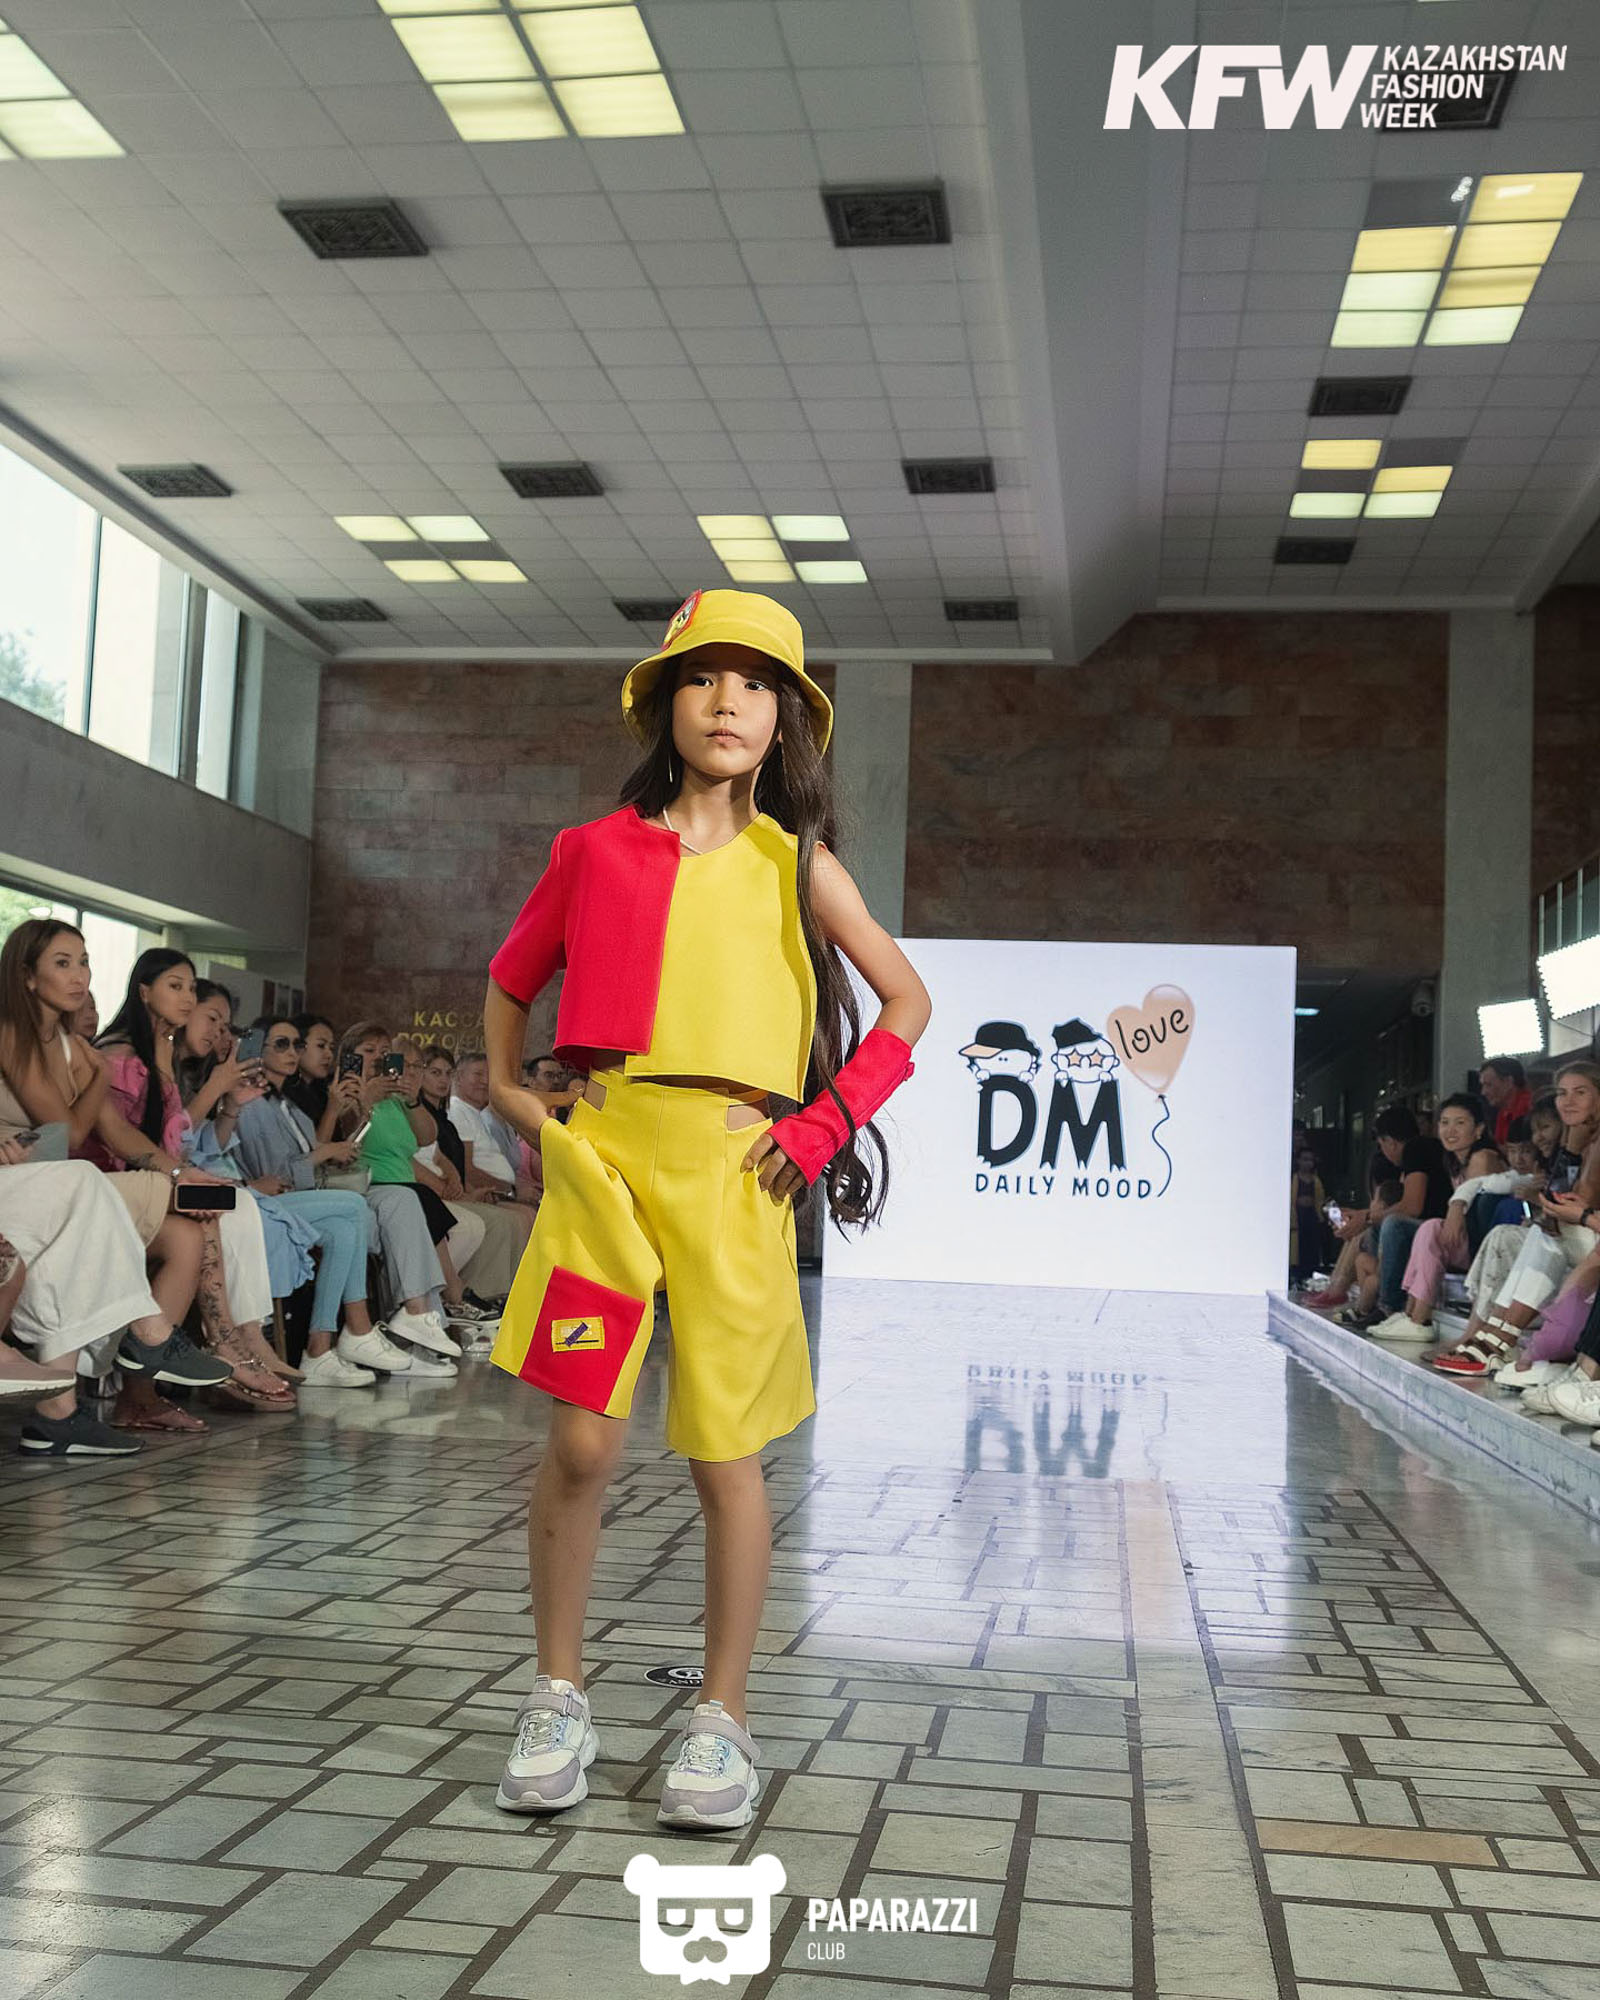 Показ "Мода за счастье детей" при поддержке Национальной Недели моды KAZAKHSTAN FASHION WEEK